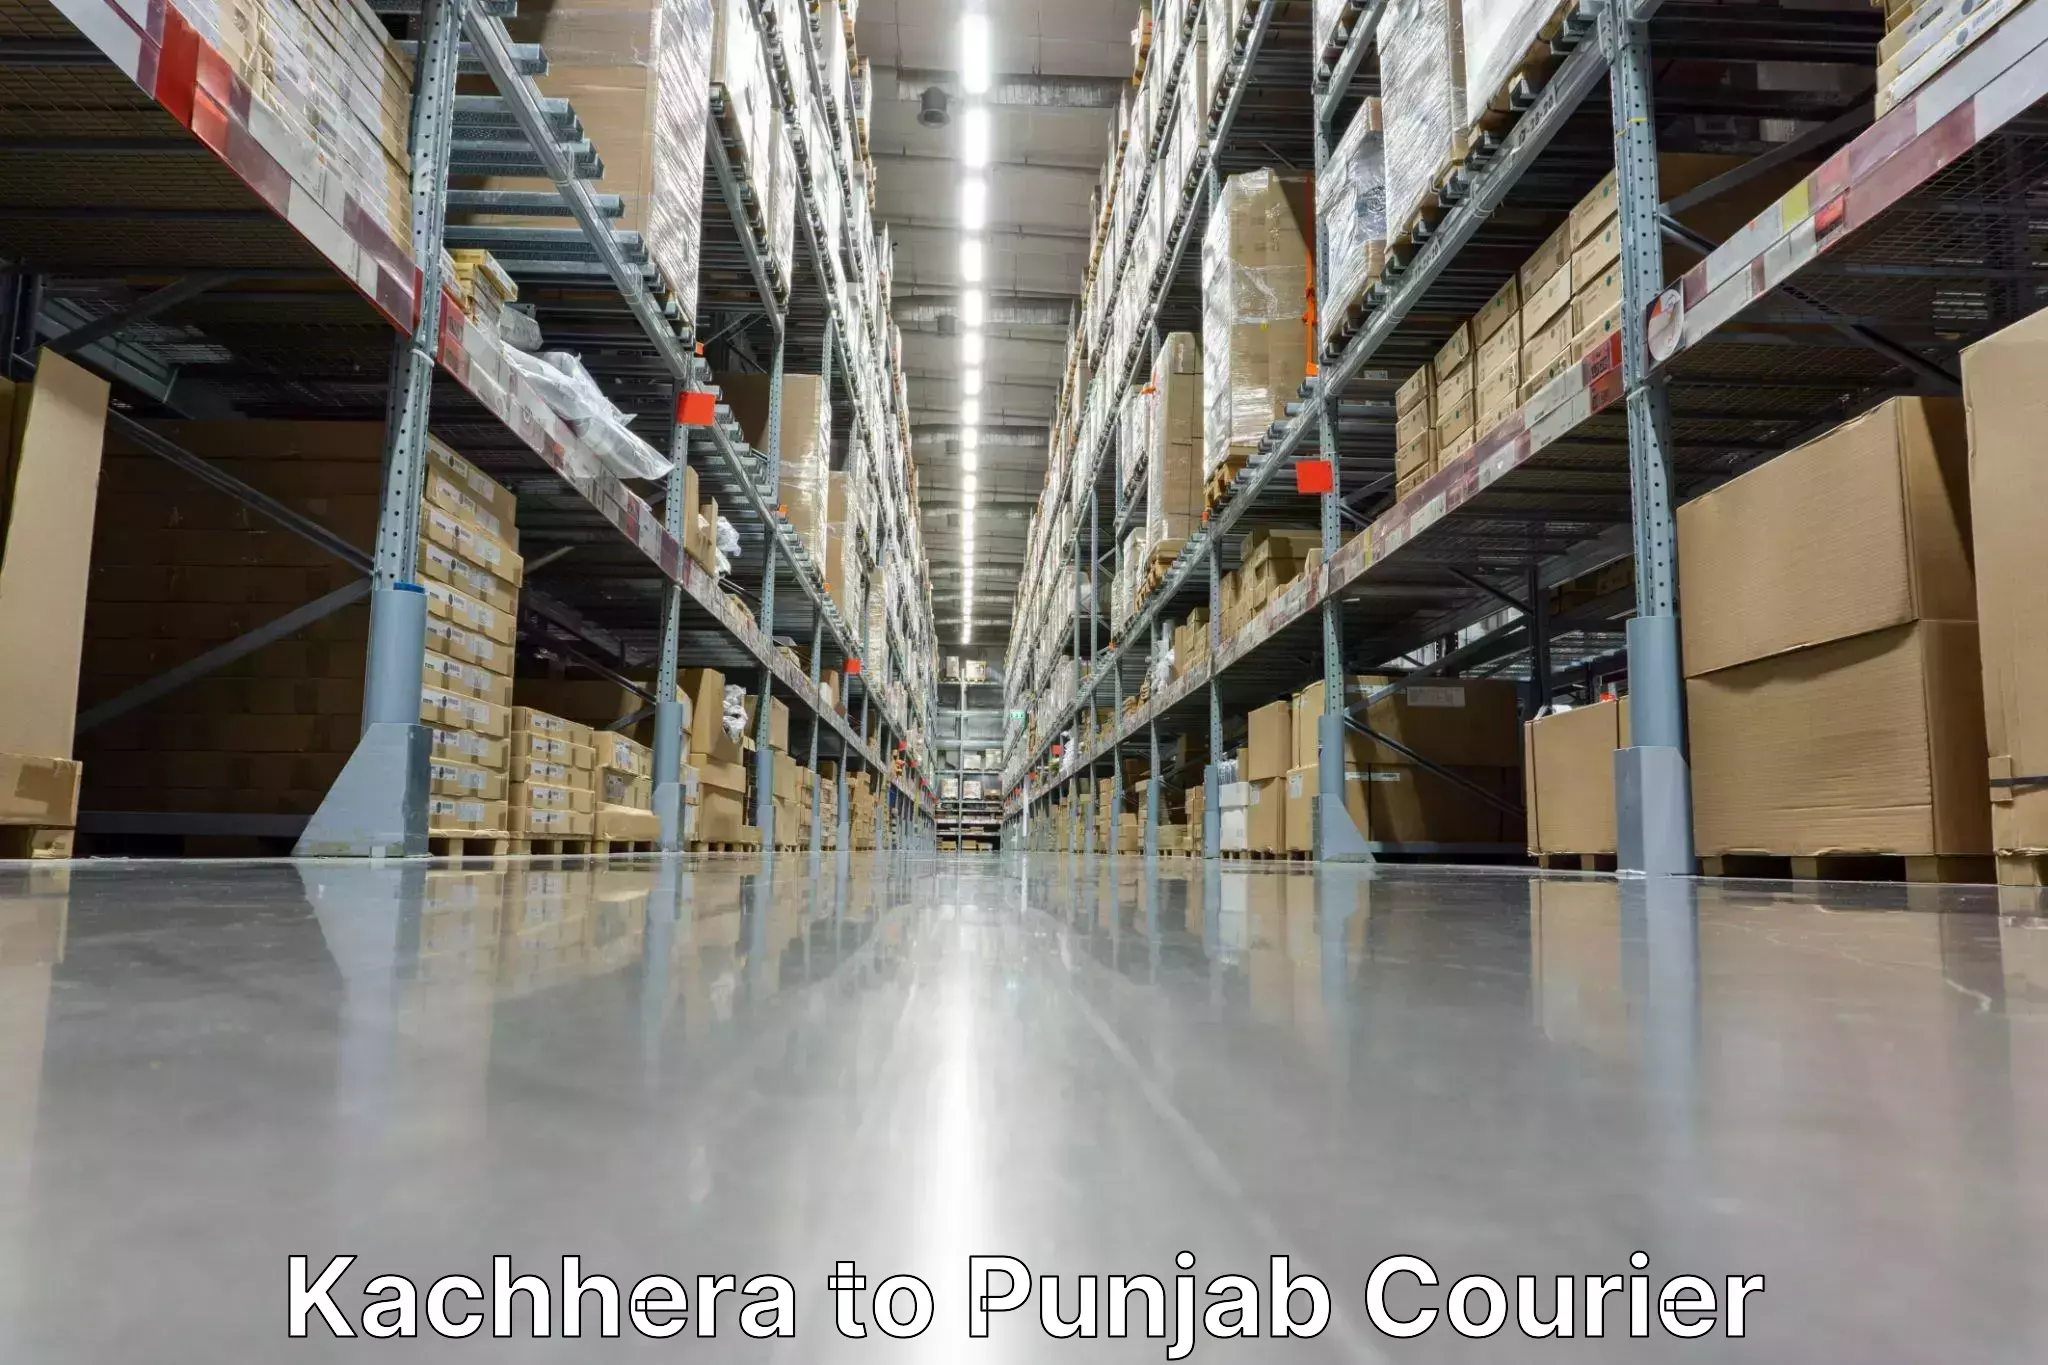 Seamless shipping service Kachhera to Mohali